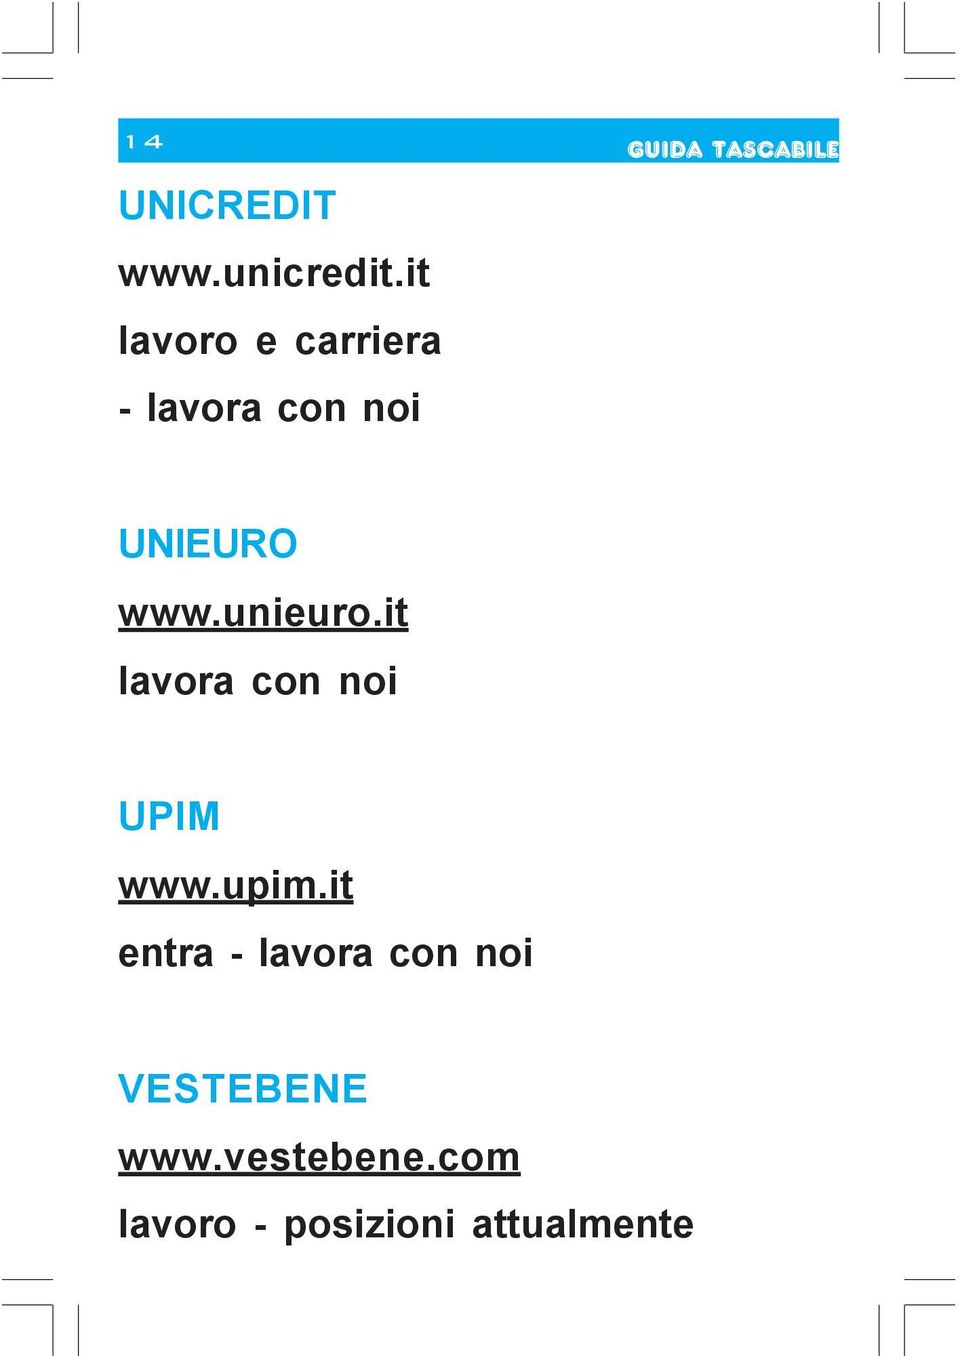 it UPIM www.upim.it entra - VESTEBENE www.